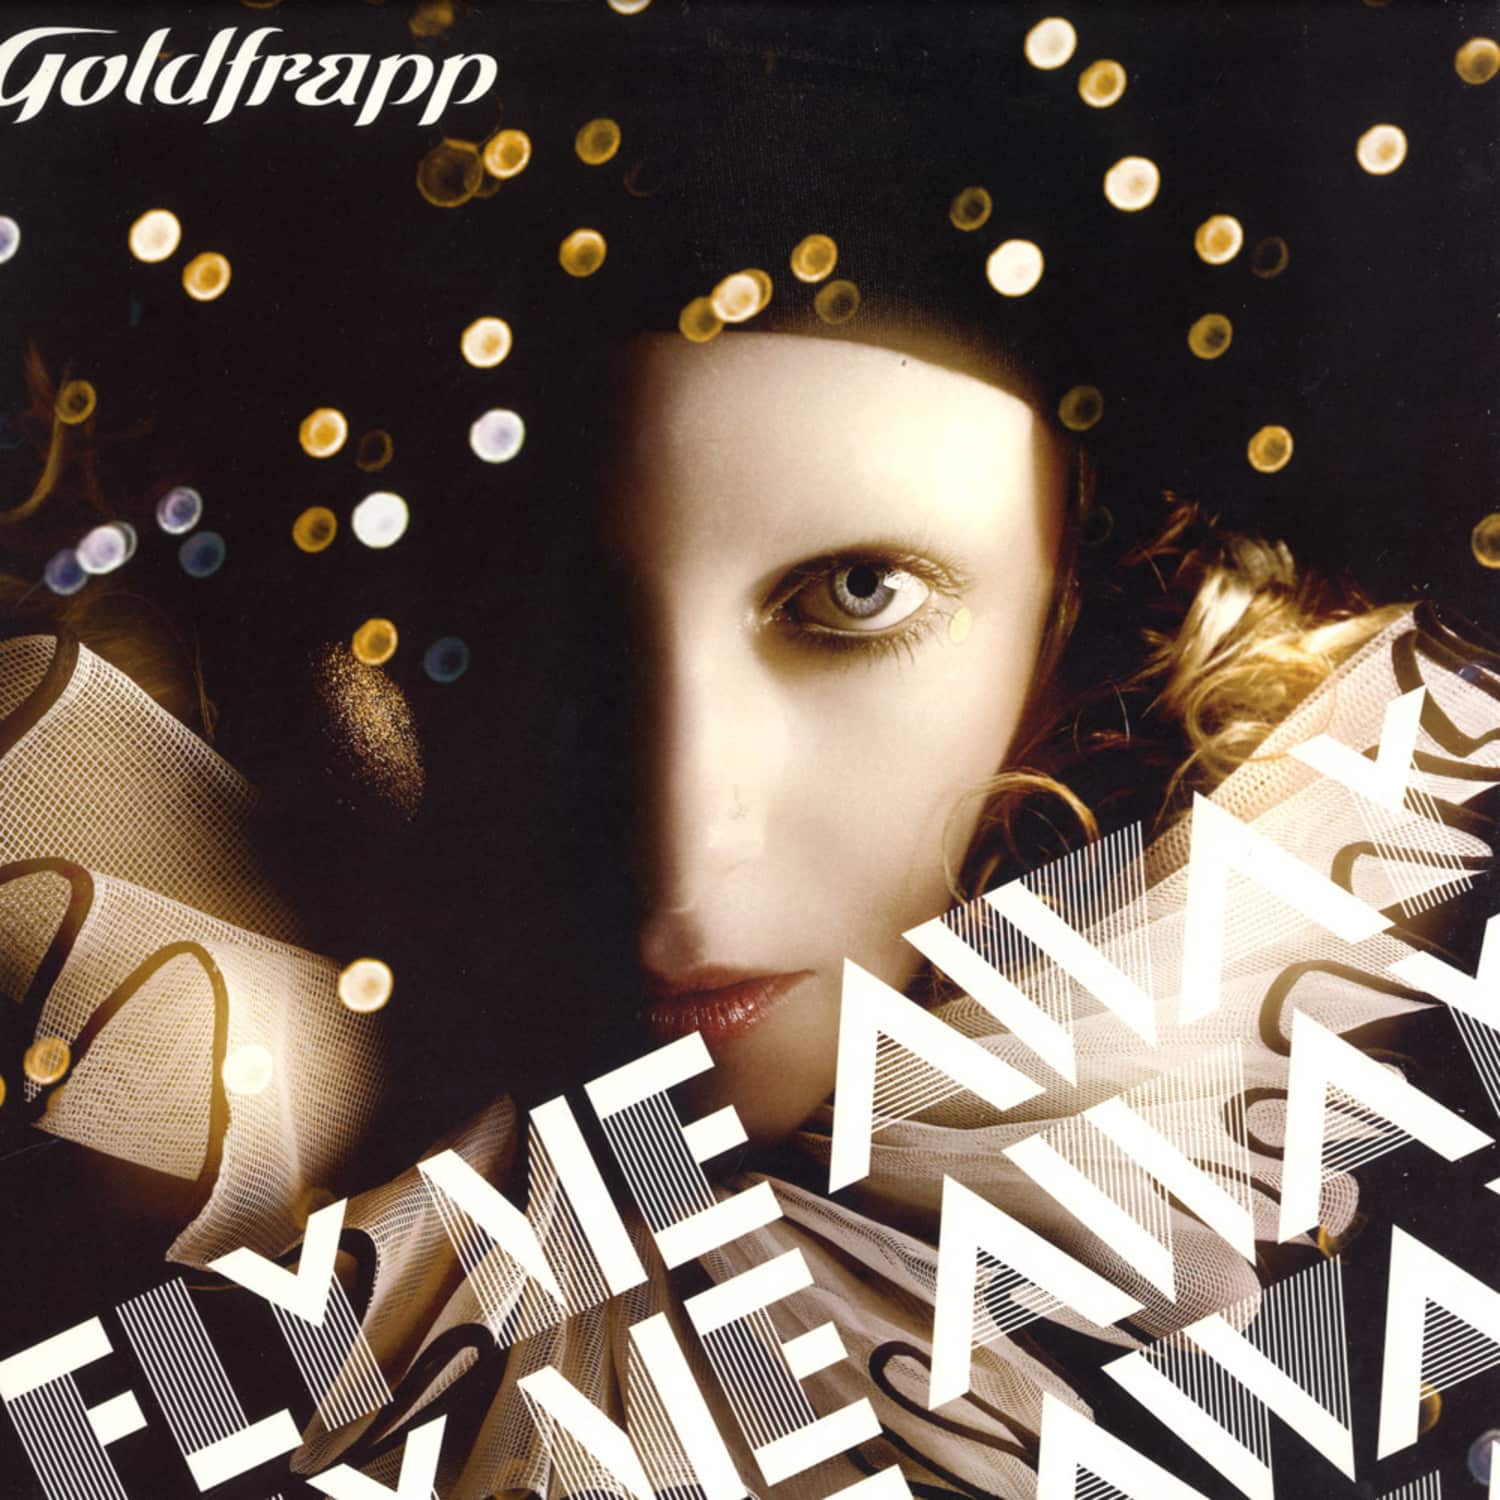 Goldfrapp - FLY ME AWAY / CARL CRAIG REMIXES